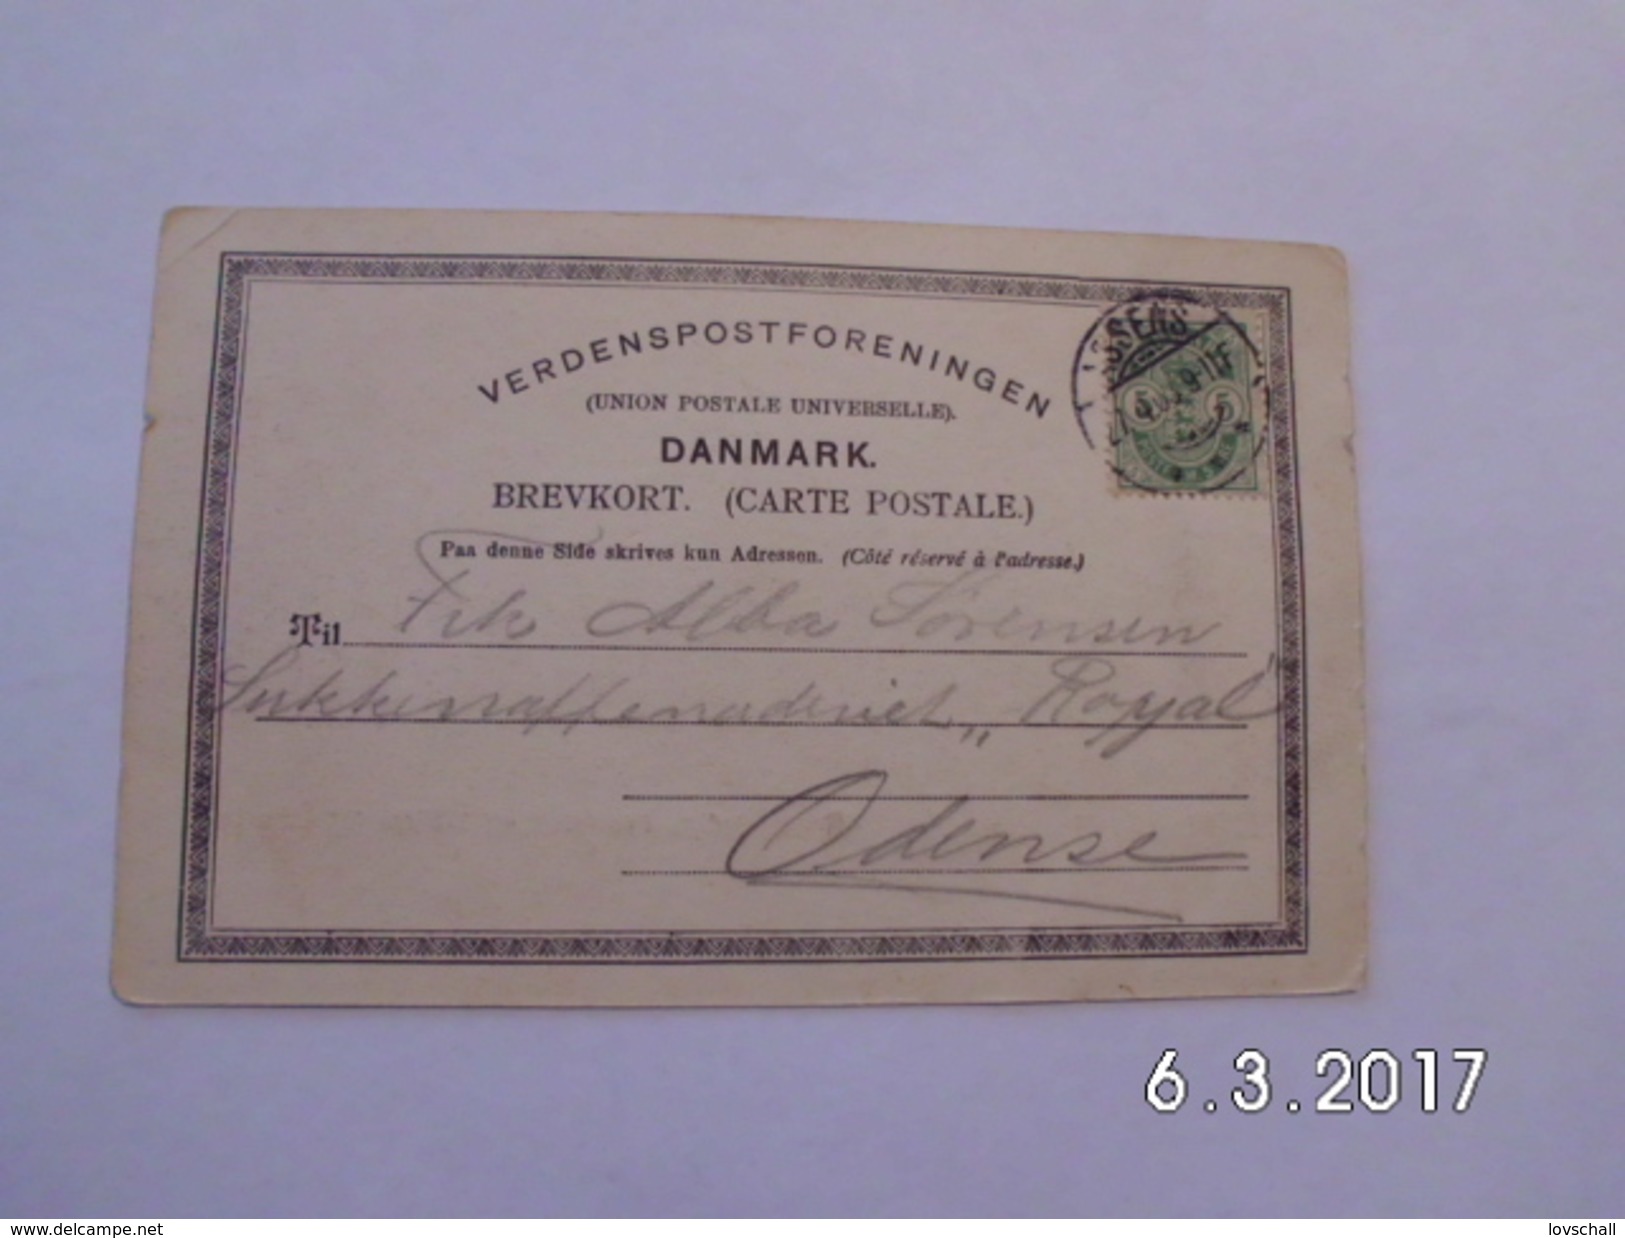 Hilsen Fra Assens. - Banegaarden, Posthuset Og Willemoëstatuen. (27 - 4 - 1903) - Denmark